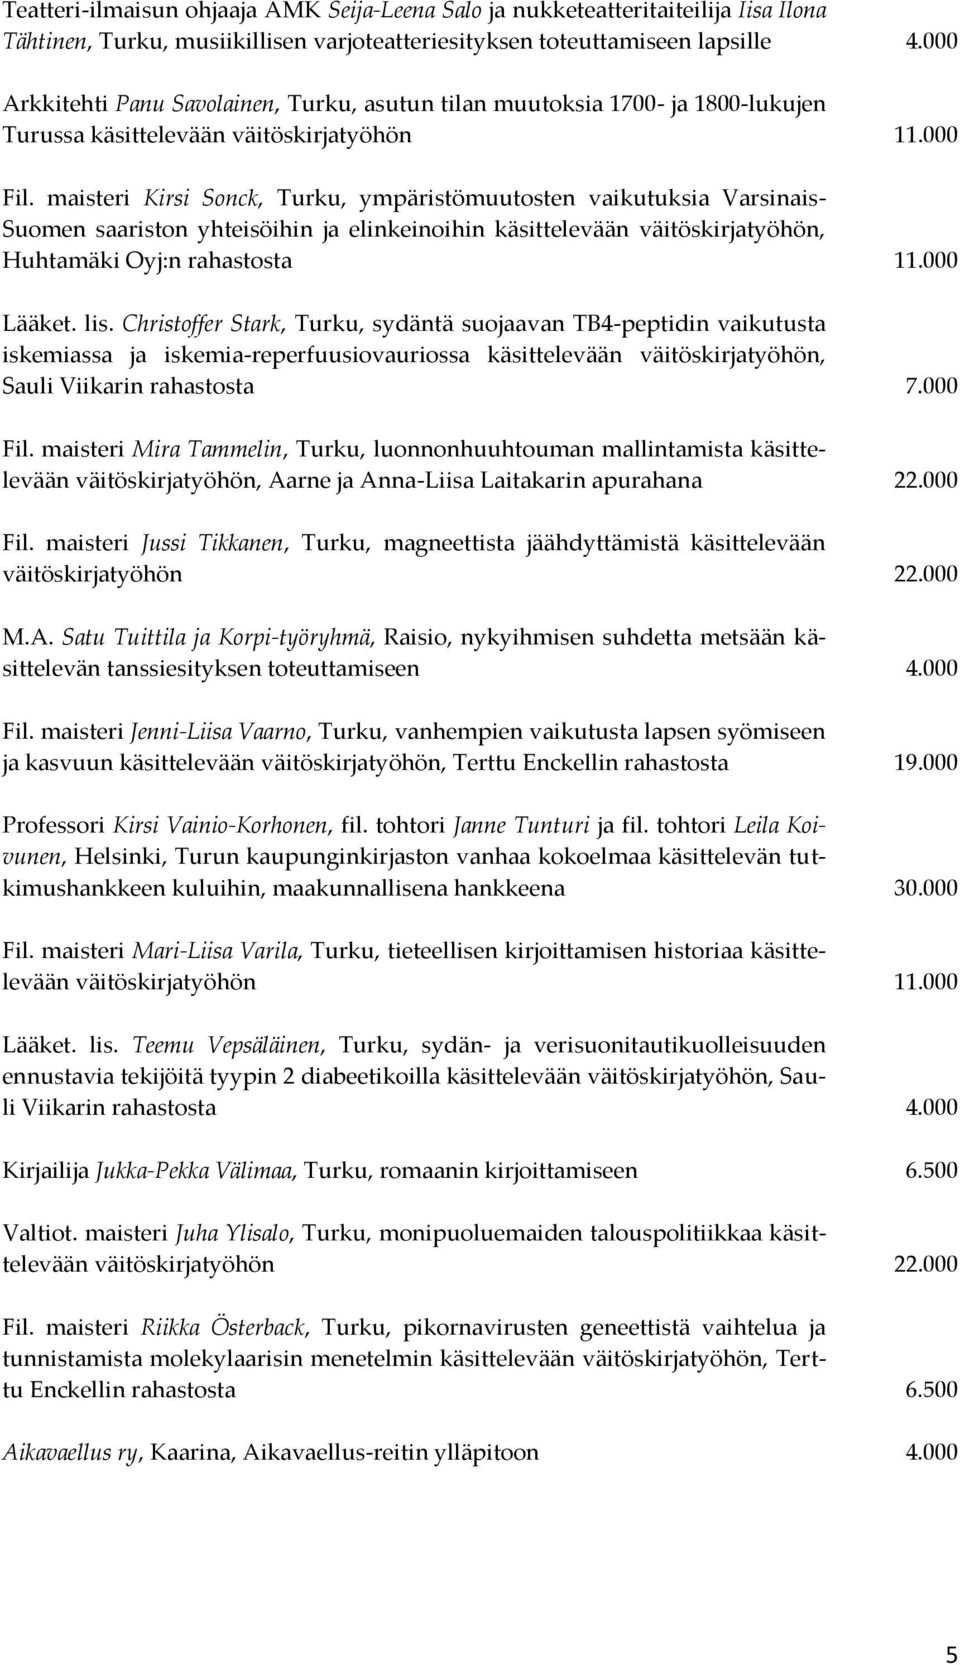 maisteri Kirsi Sonck, Turku, ympäristömuutosten vaikutuksia Varsinais- Suomen saariston yhteisöihin ja elinkeinoihin käsittelevään väitöskirjatyöhön, Huhtamäki Oyj:n rahastosta 11.000 Lääket. lis.